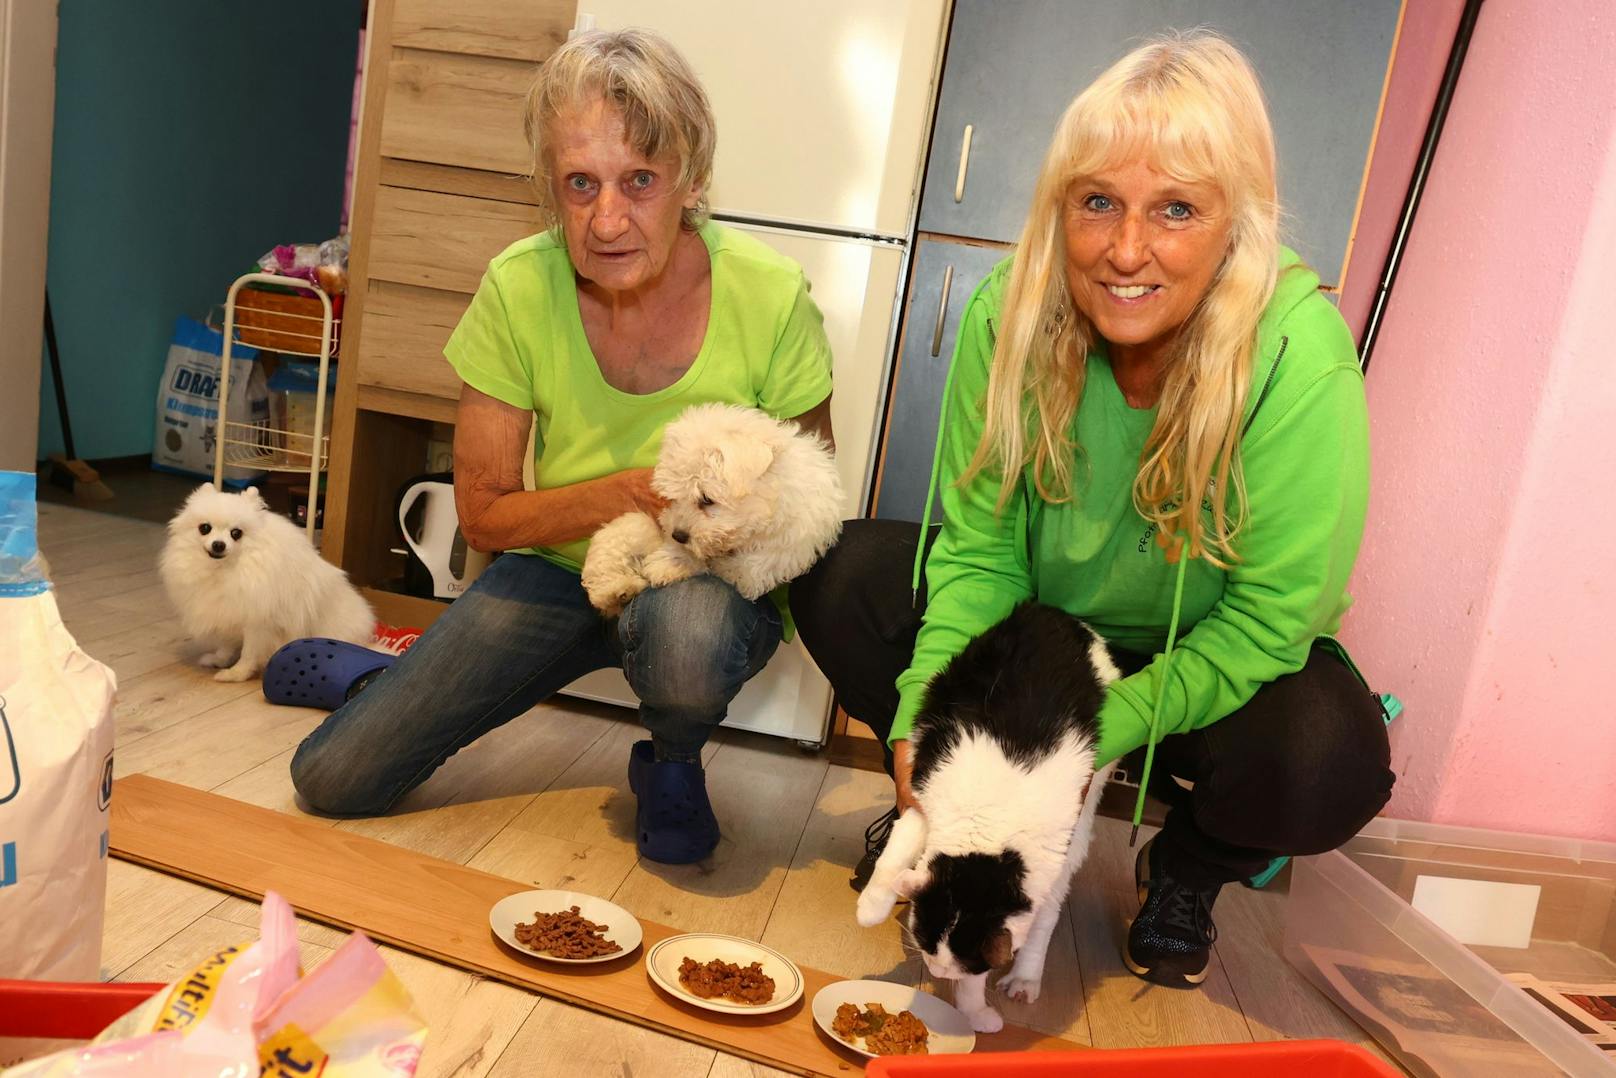 Irene H. (71) lebt mit sieben Katzen und zwei Hunden zusammen. Gabi Collmann vom Verein "Pfotenmarkt auf Rädern" liefert ihr regelmäßig Futter für die Vierbeiner.